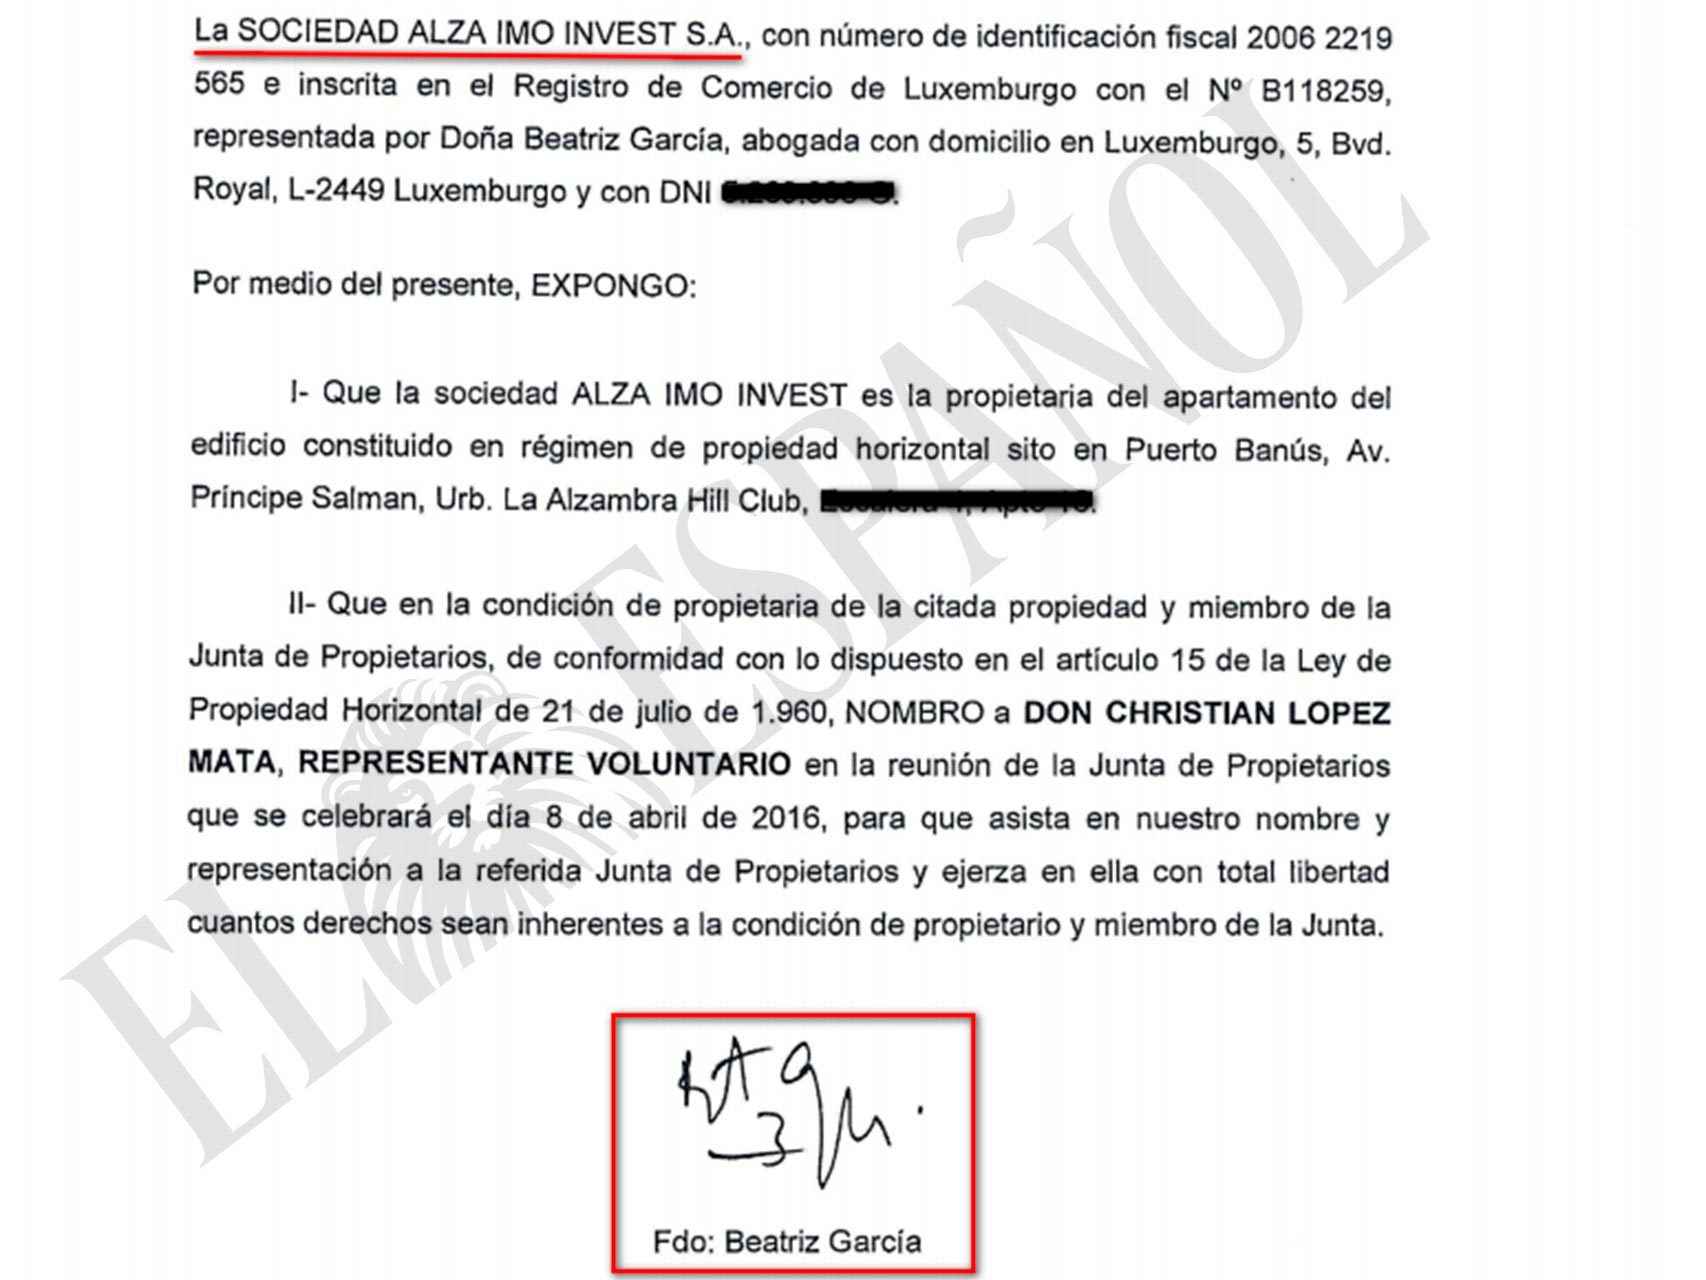 Documento de Beatriz García Paesa reconociendo la titularidad del inmueble.